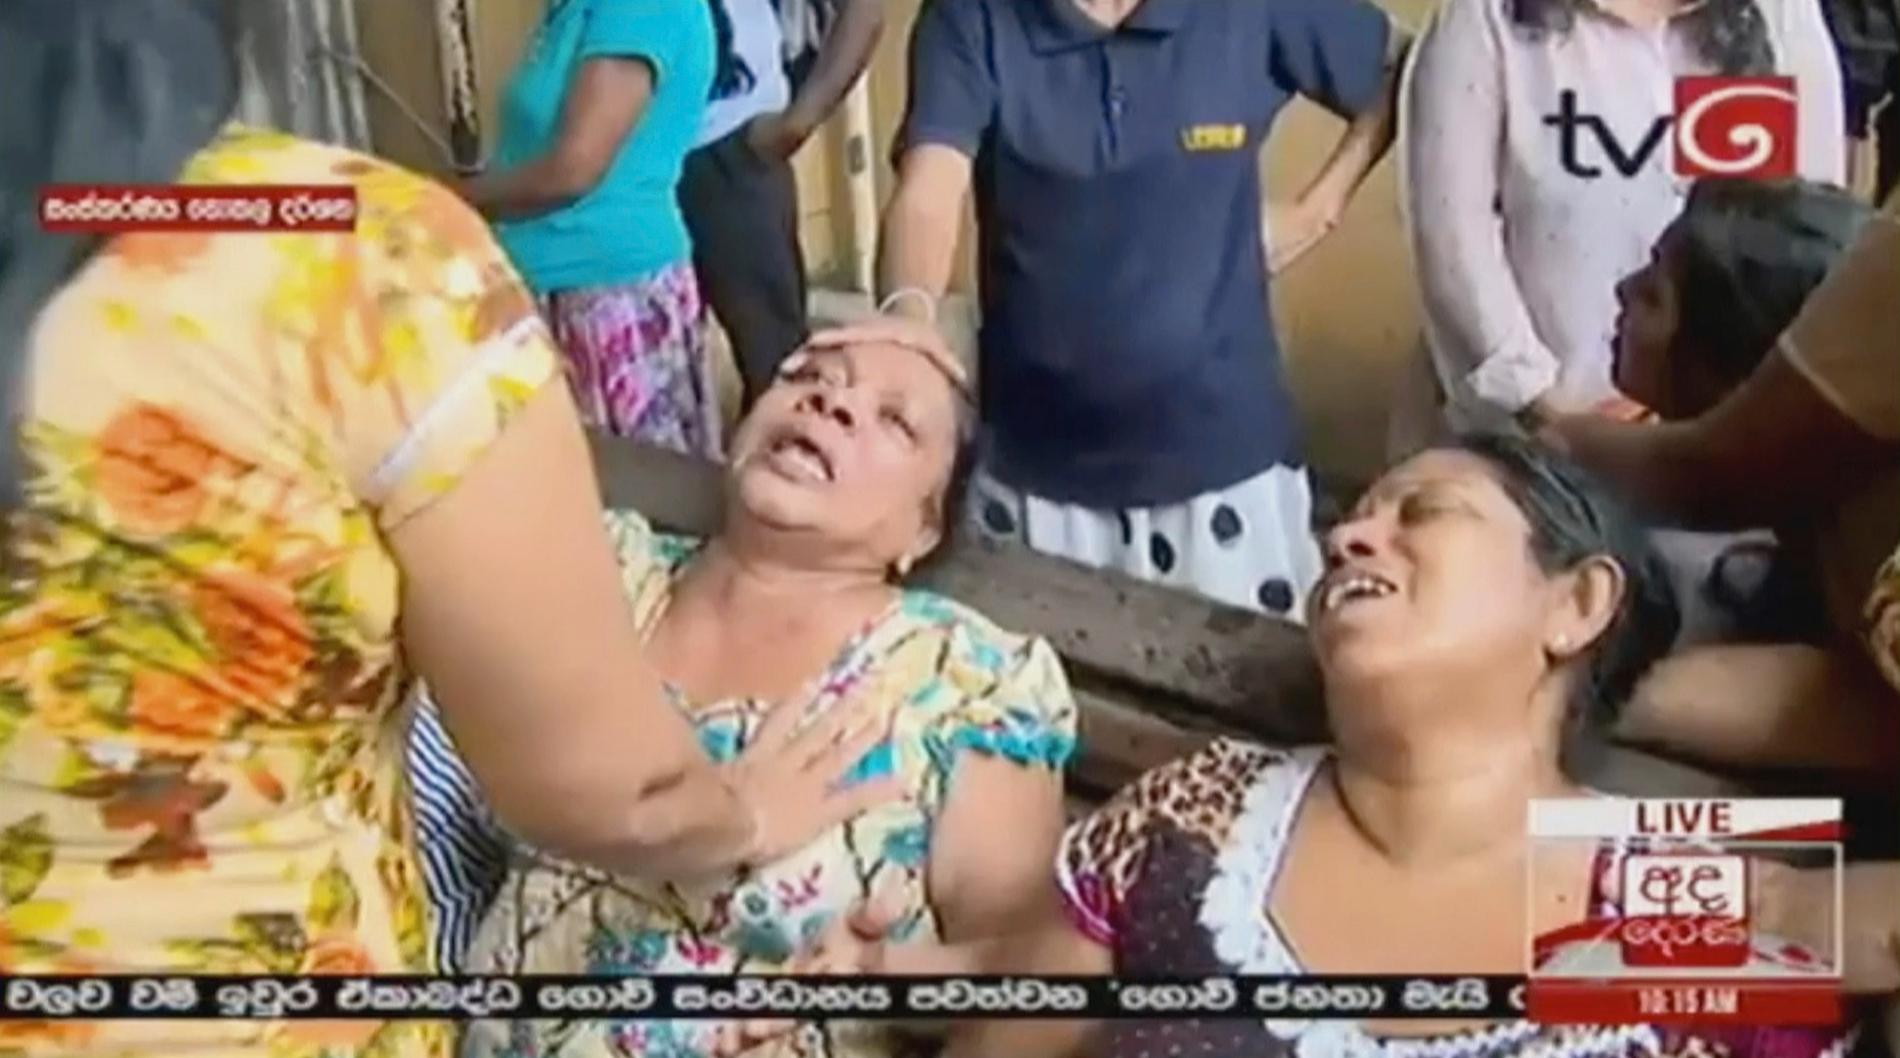 Stillbild från lankesisk tv visar skadade och chockade människor efter en explosion i Colombo.